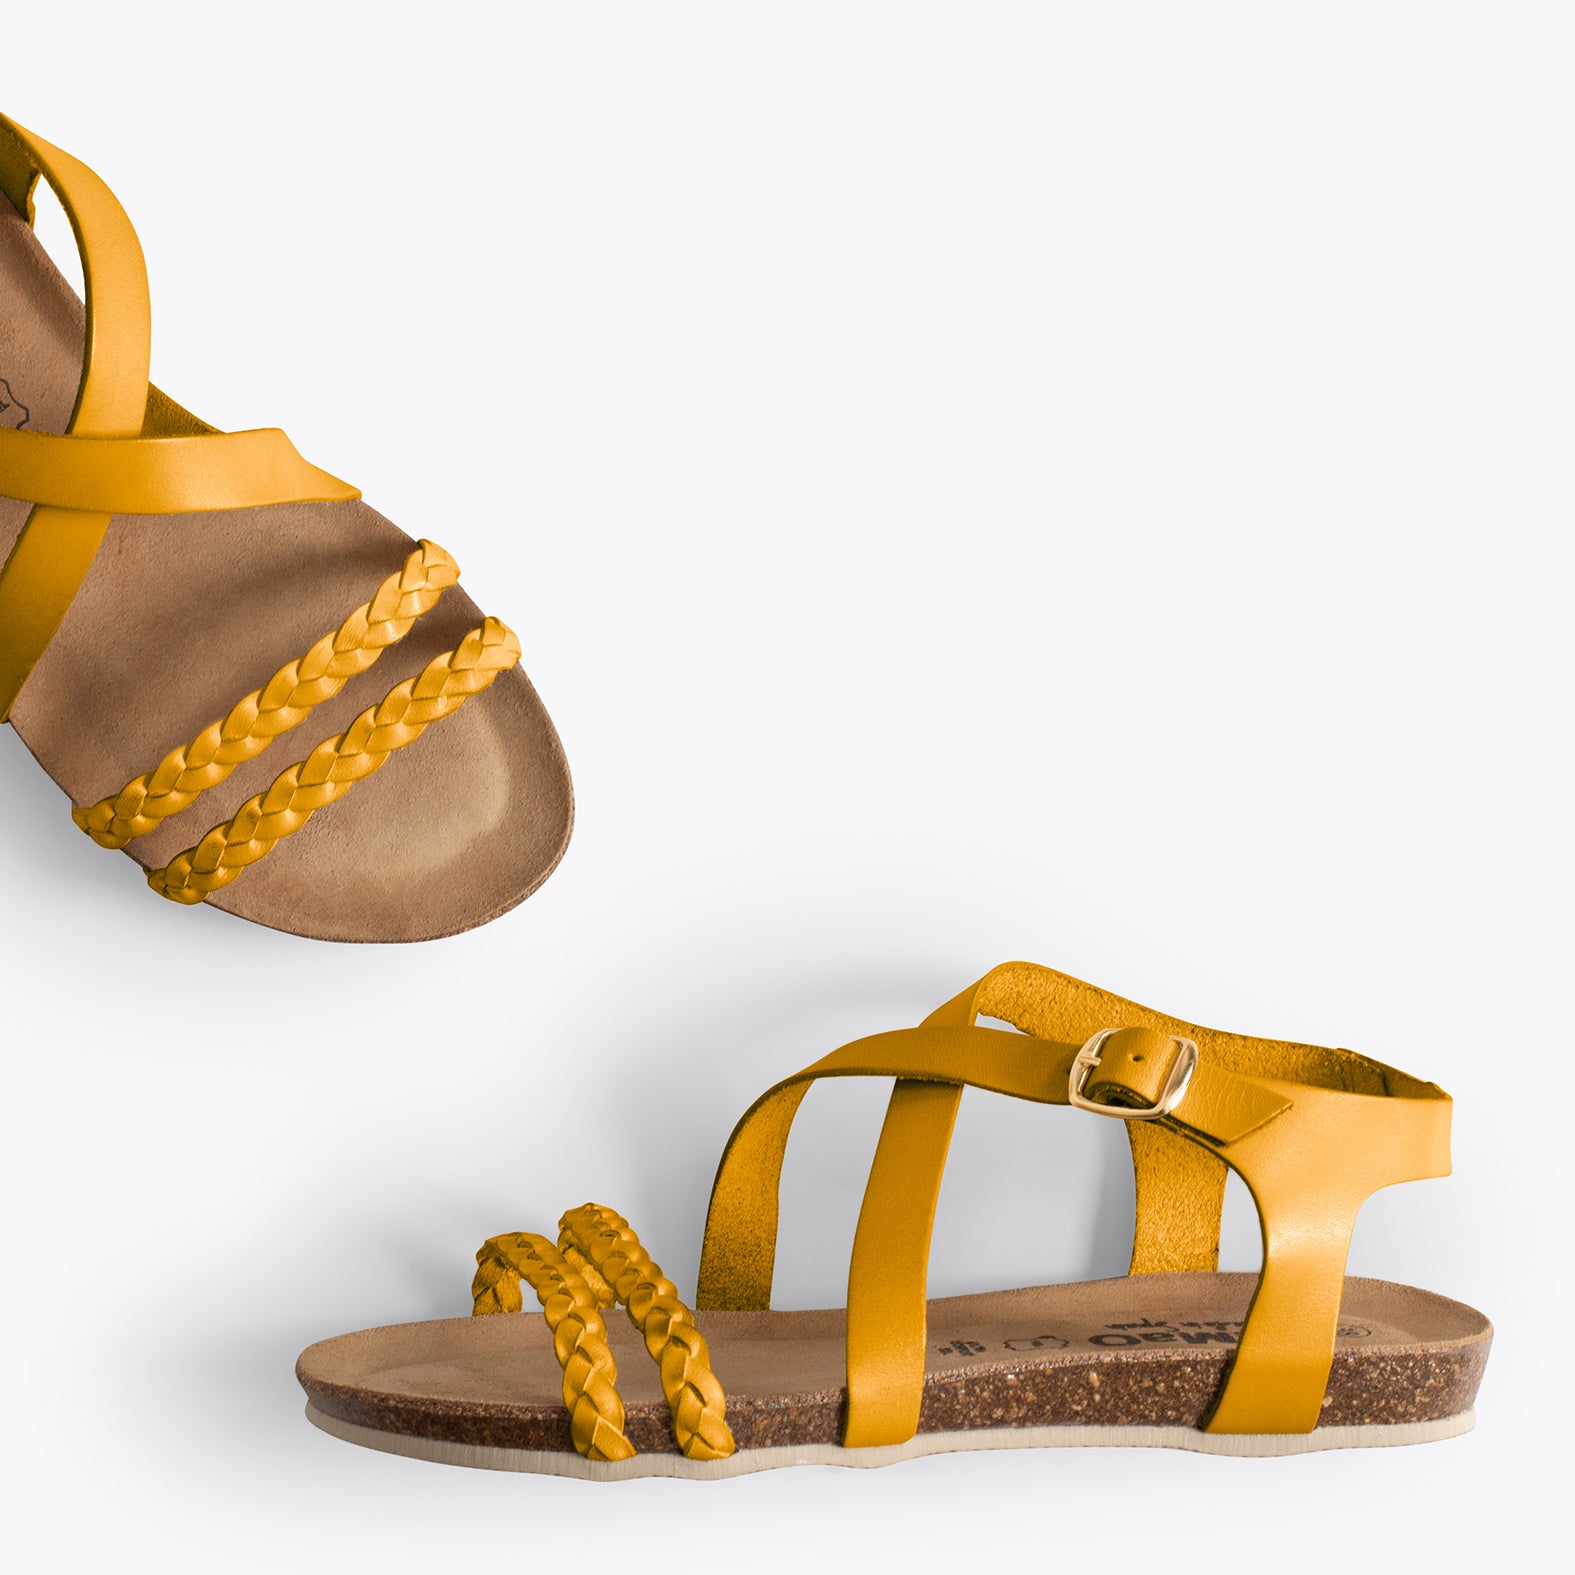 INDIE – MUSTARD BIO sandals with straps